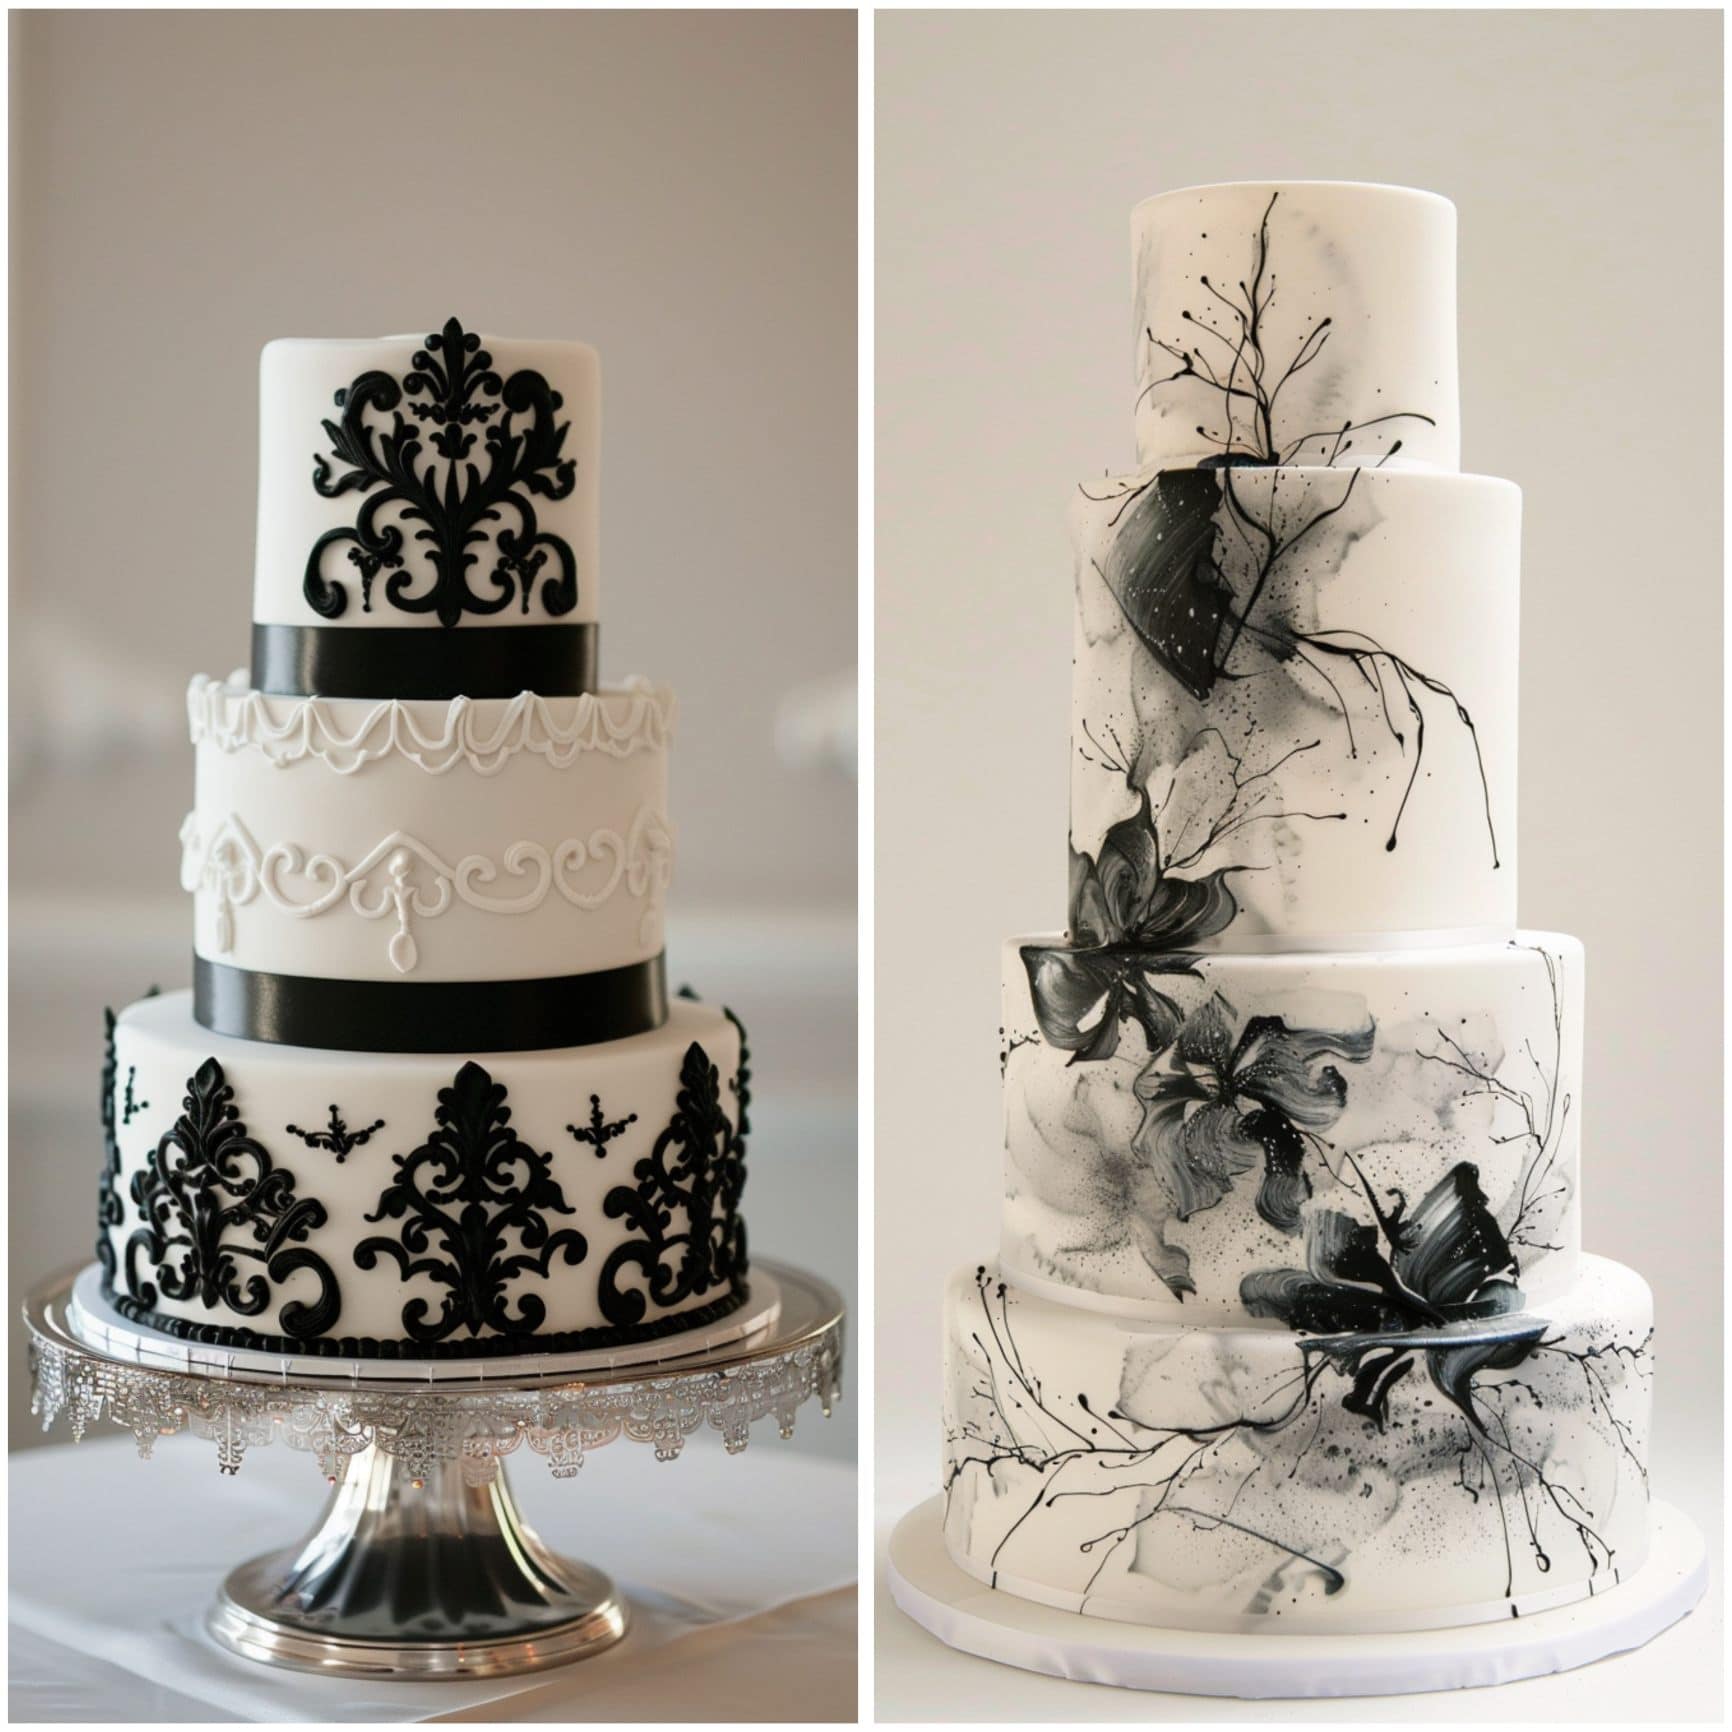 black and white wedding theme ideas for cake